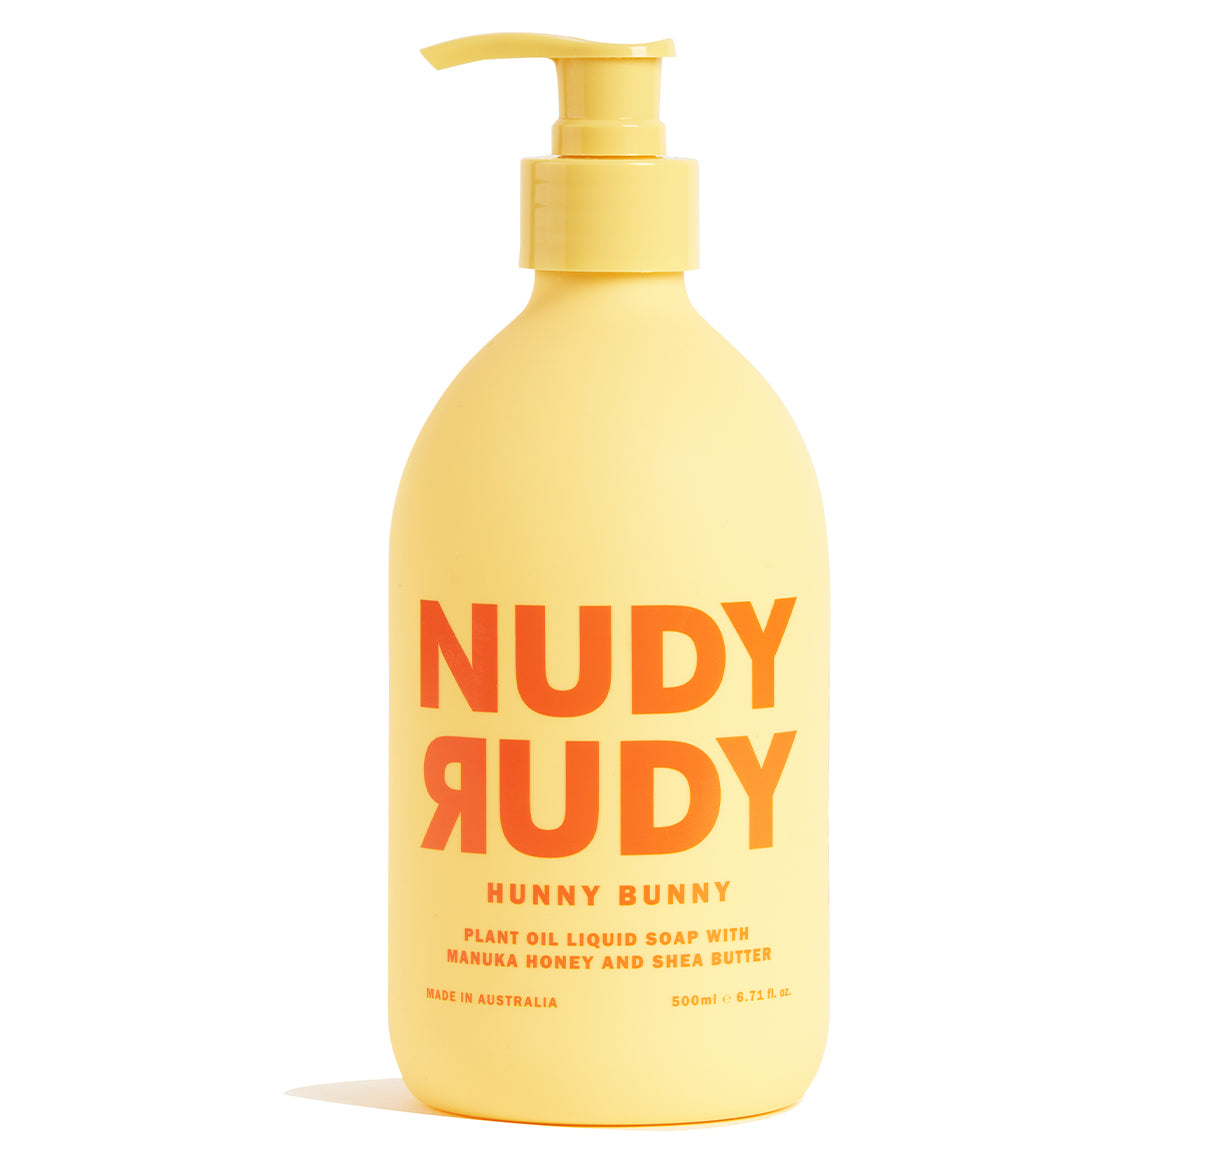 Hunny Bunny Body Care Kit